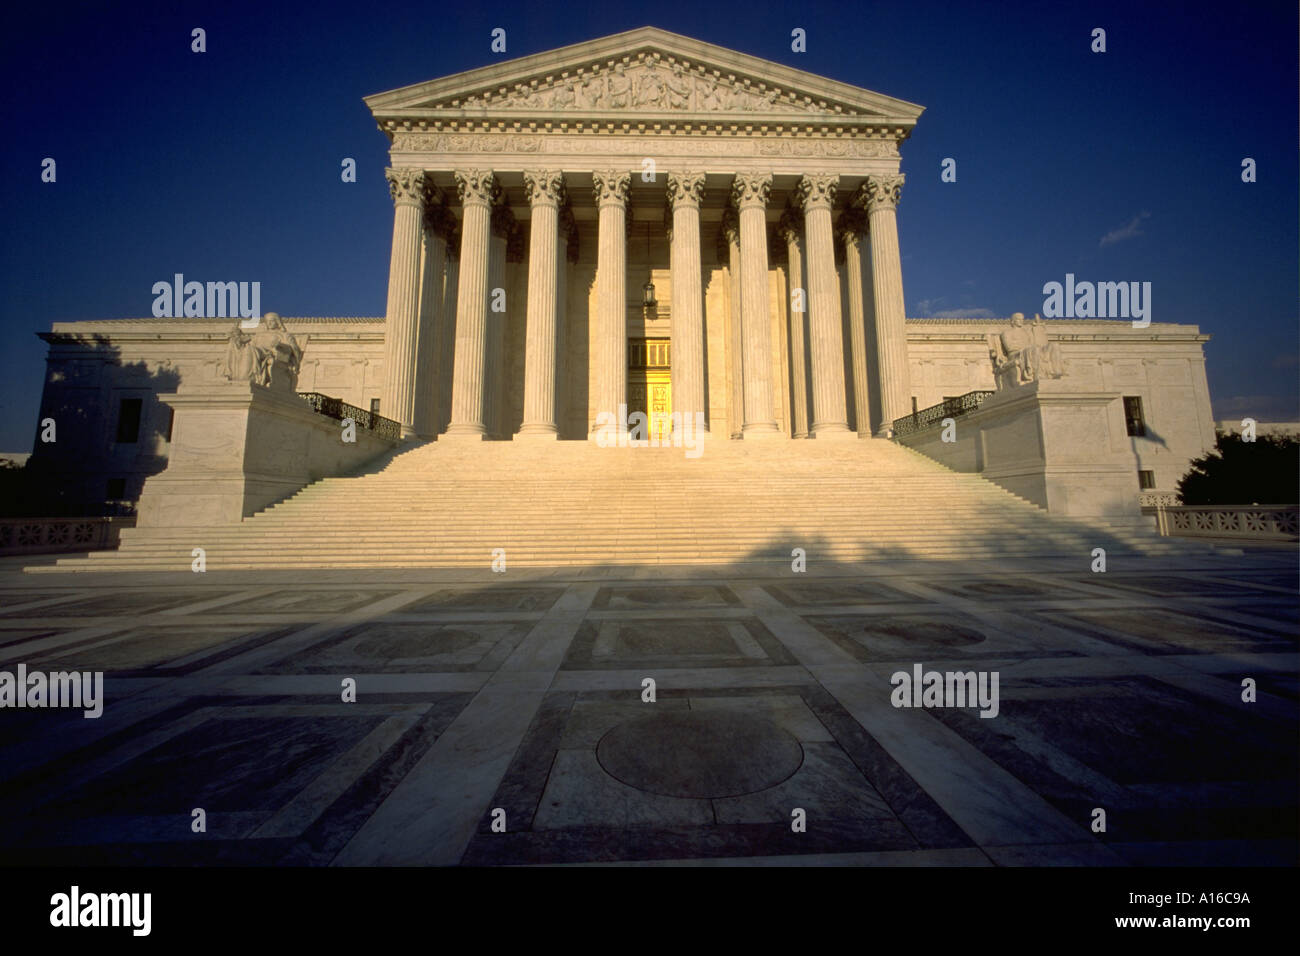 US Supreme Court building, Washington D.C. Stock Photo